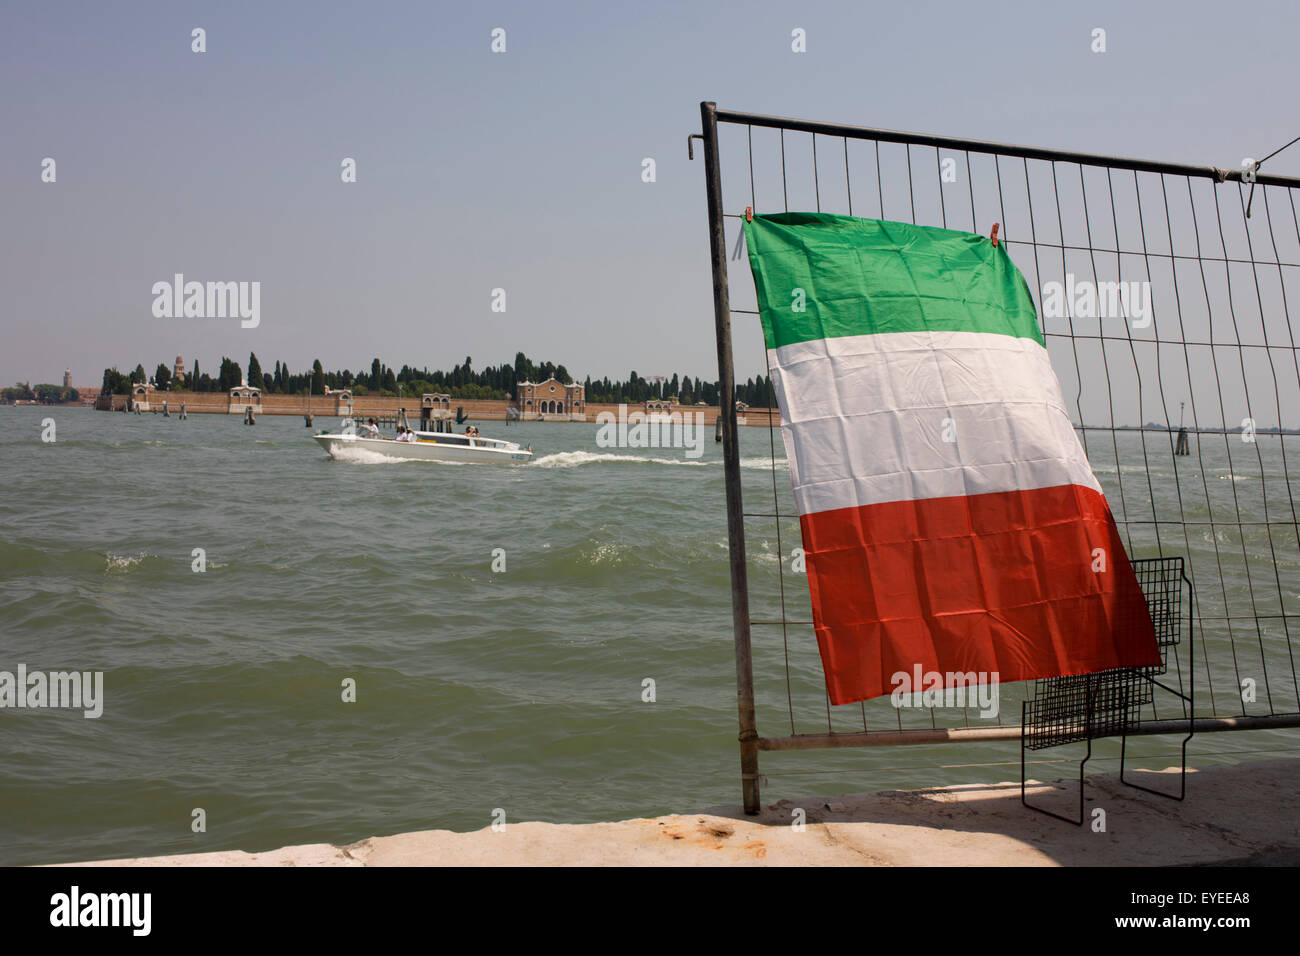 A speedboat passes the Italian flag on Venice's Canale delle Fondamenta Nuove in the Cannaregio district. Stock Photo